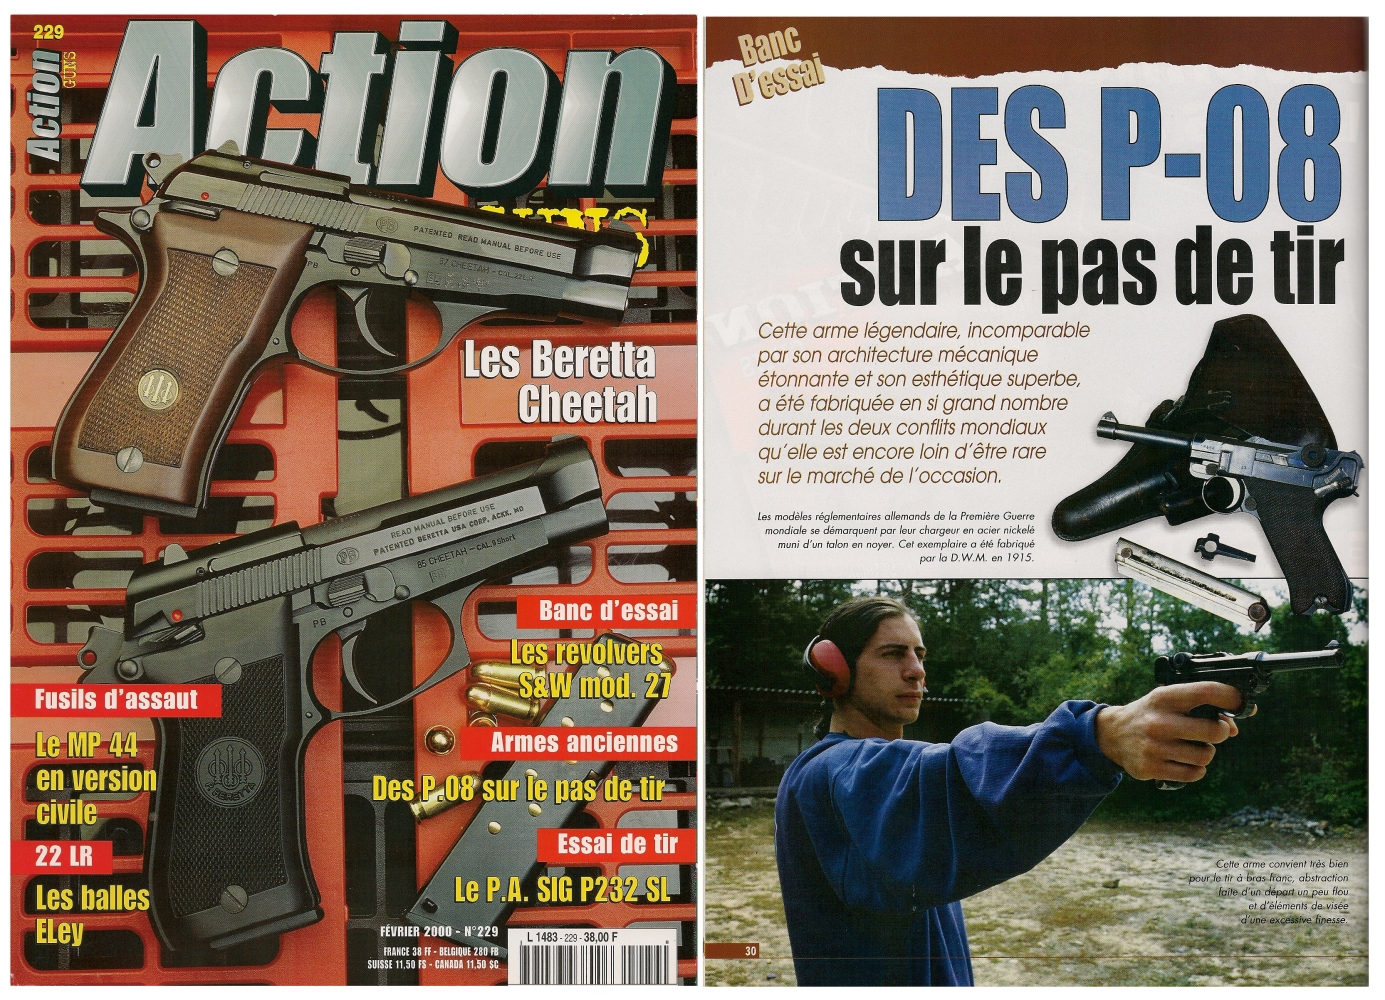 Le banc d'essai des pistolets P-08 a été publié sur 6 pages dans le magazine Action Guns n°229 (février 2000).